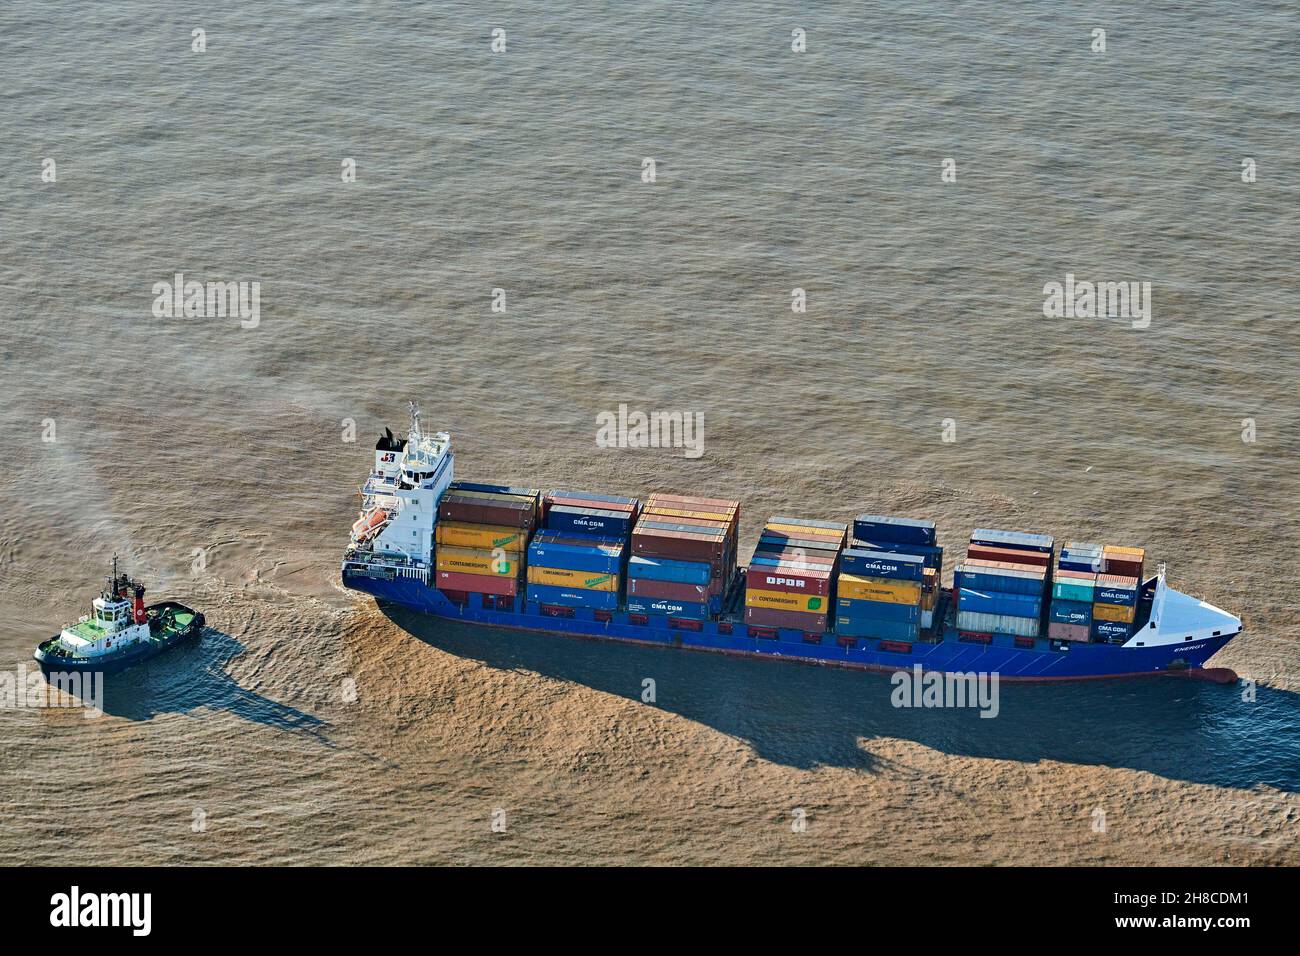 Una vista aérea de los contenedores sobre el envío, River Mersey, Liverpool Docks, North West England, Reino Unido Foto de stock